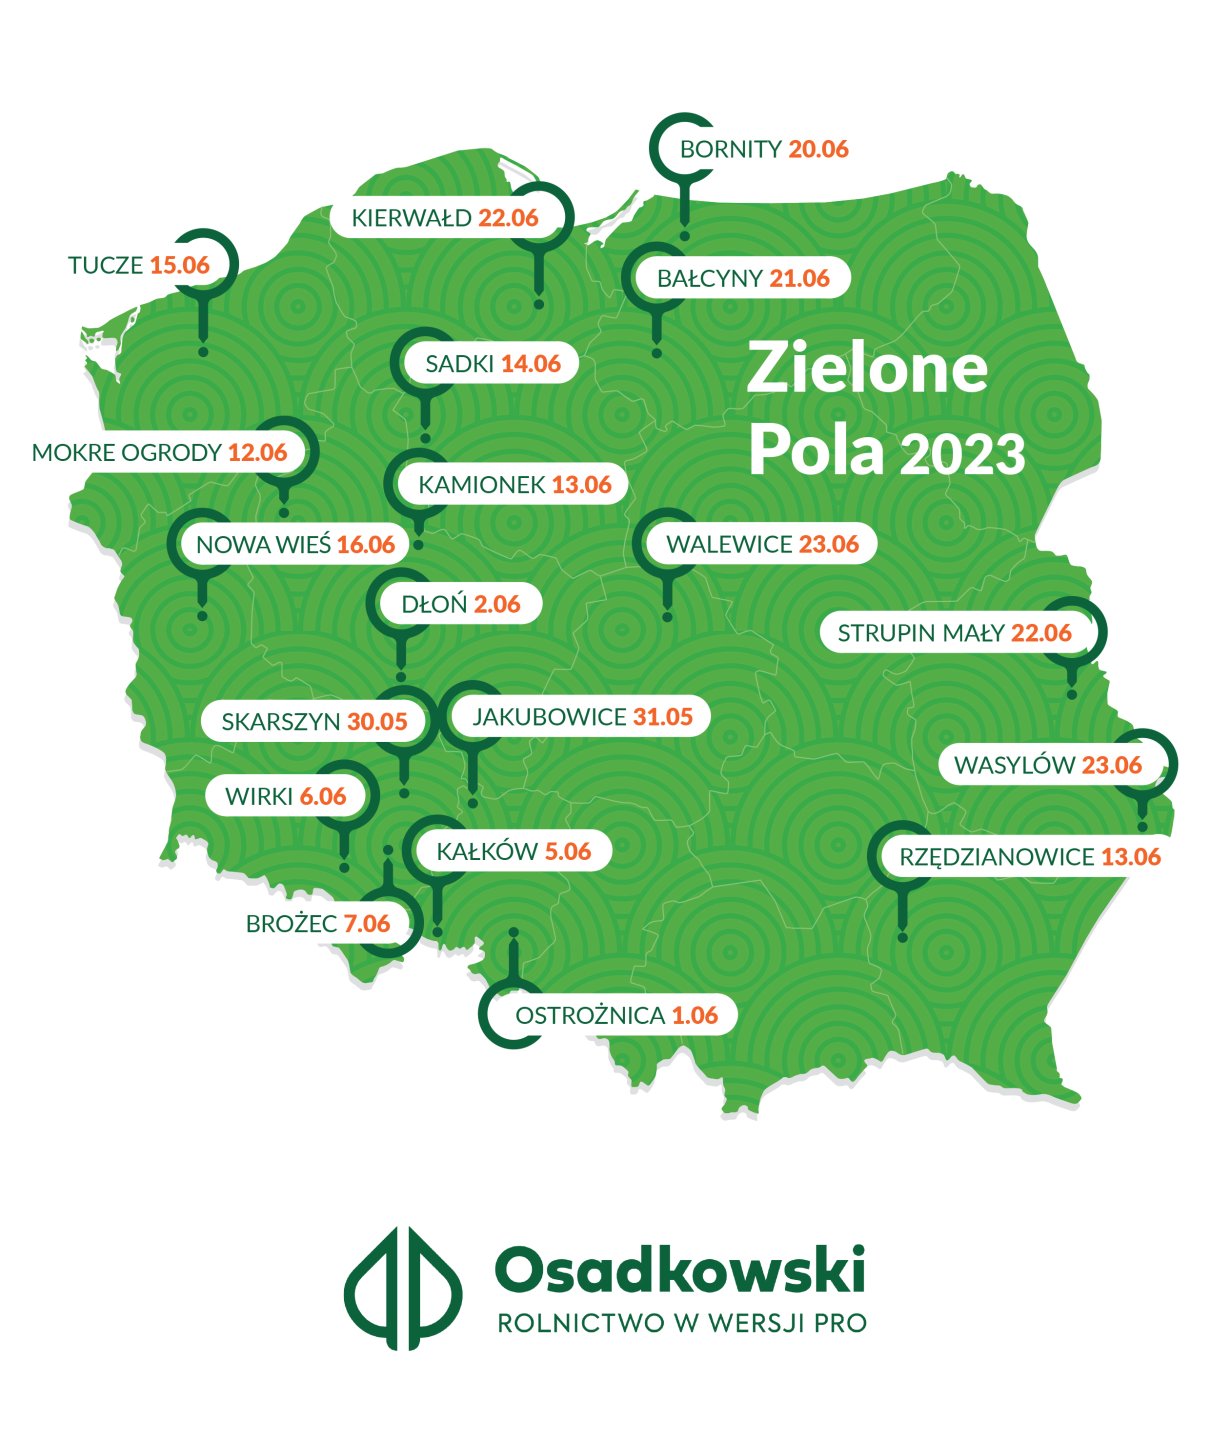 ZIELONE POLA 2023 Poletka Osadkowski bliżej rolnika! News